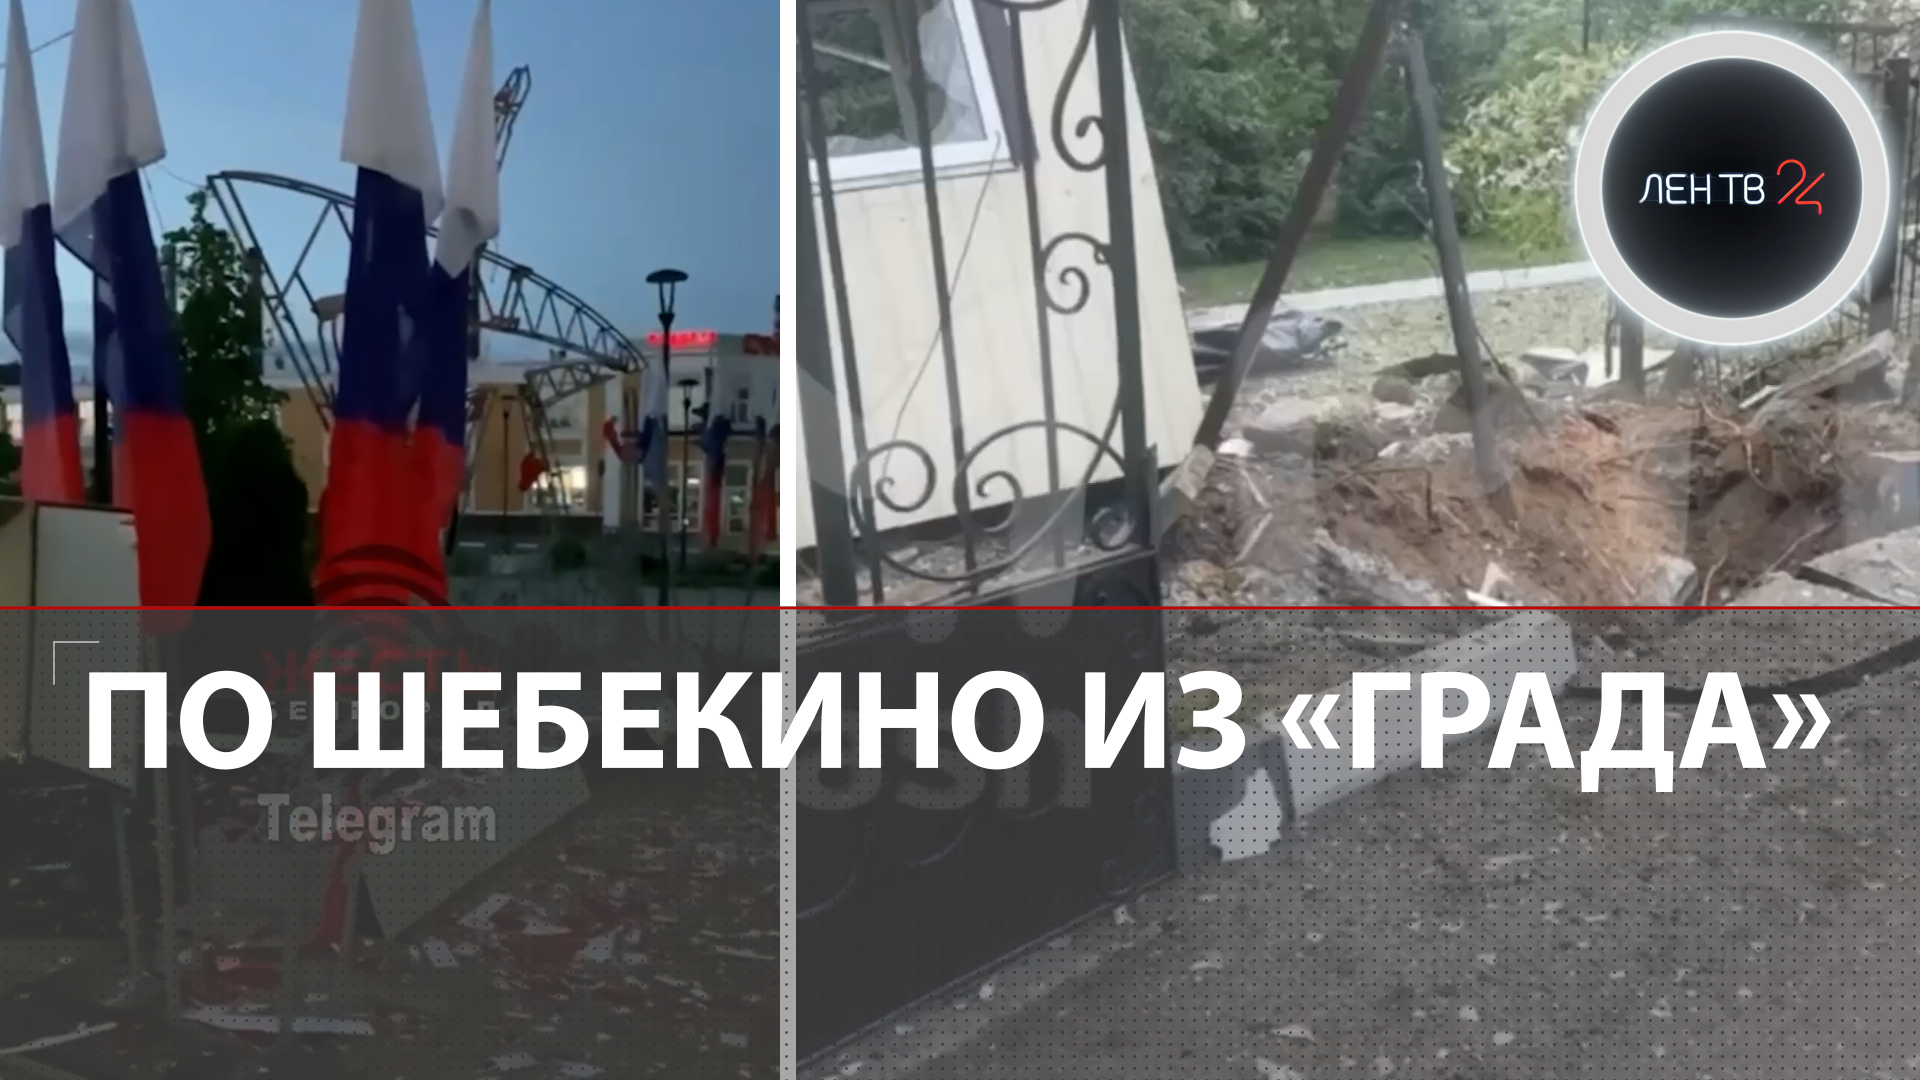 Шебекино взрывы | Из Белгородской области эвакуируют 300 детей | Пригожин: надо объявить мобилизацию